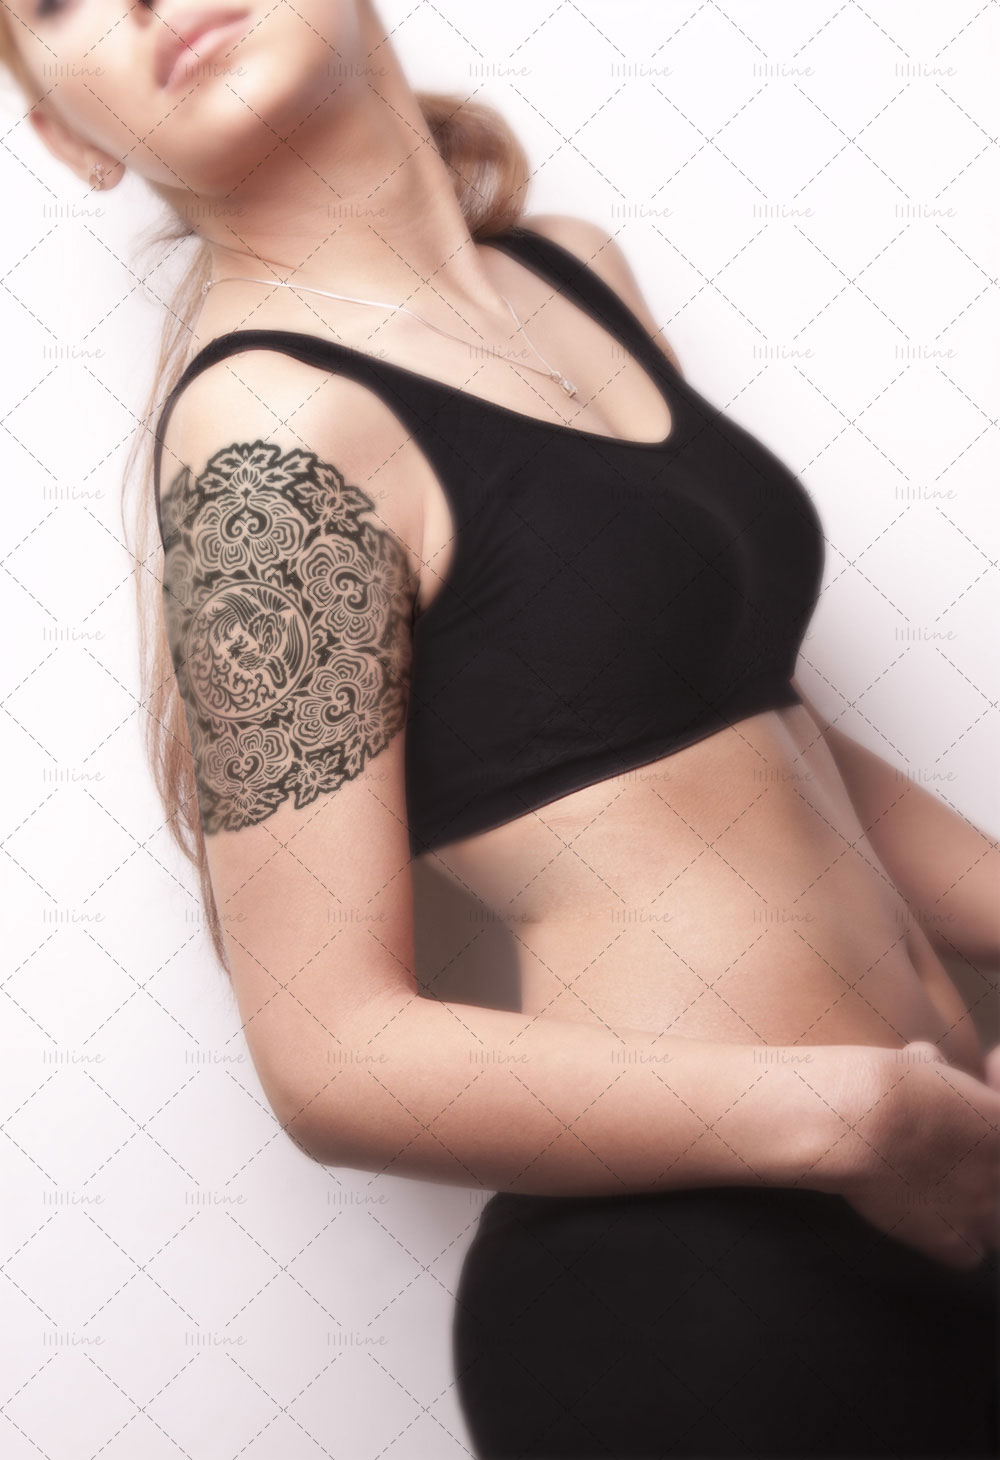 circulare phoenix ruyi lotus totem tattoo pattern vi eps pdf